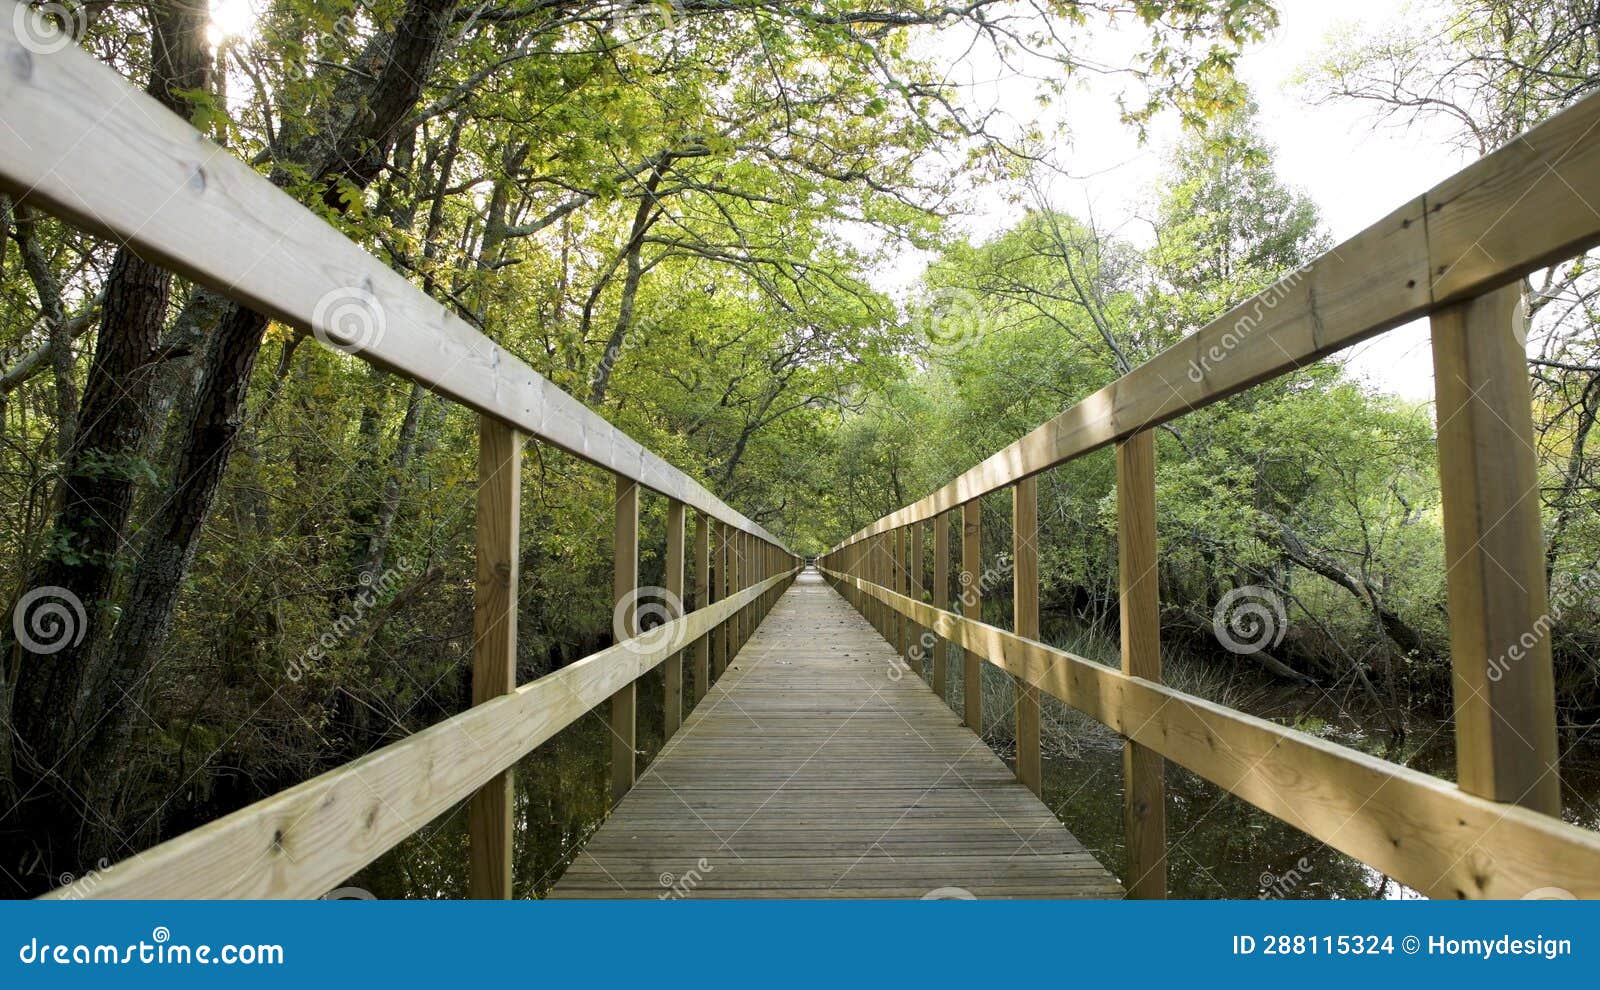 wooden pathway in lagoas de bertiandos